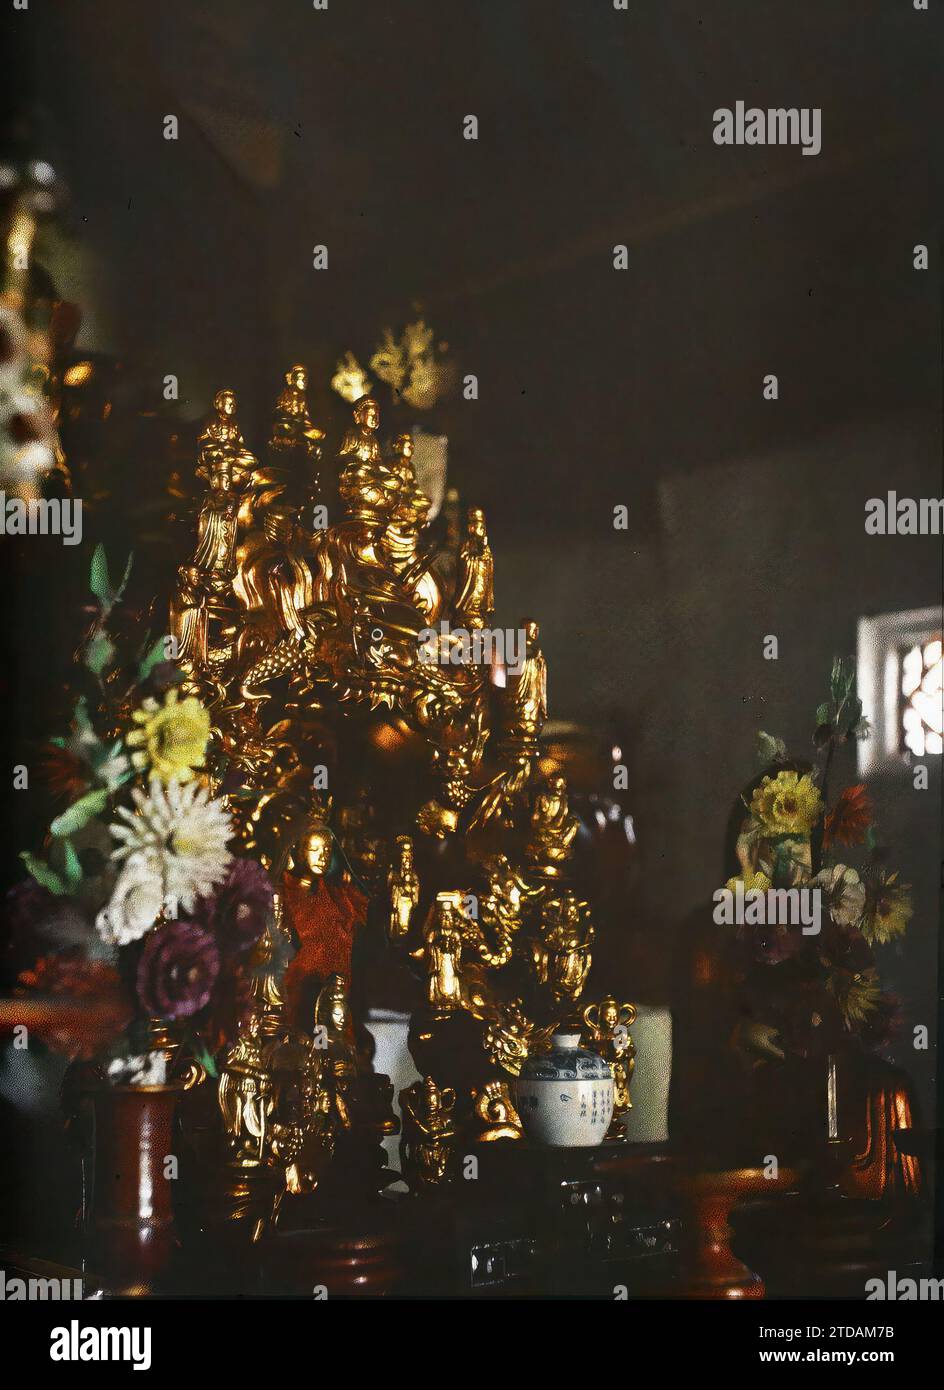 Hà-noi, Tonkin, Indochina der Altar des Cakyamuni Buddha (Siddhartha Gautama) in einem buddhistischen Tempel ('Lien-thuy'), Religion, Habitat, Architektur, Statue, Buddhismus, Buddha, Tempel, Pagode, Innenansicht, Altar, Blume, Keramik, religiöse Architektur, Indochina, Tonkin, buddhistische Seiten, Lien Thuy Pagode: Altar von Thich-la (Cakiamouni), Hà-nôi, Hainoi Vietnam, 01/06/1916 - 31/07/1916, beschäftigt, Léon, Léon beschäftigt Fotograf en en Indochine, Autochrome, Foto, Glas, Autochrome, Foto, positiv, Vertikal Stockfoto